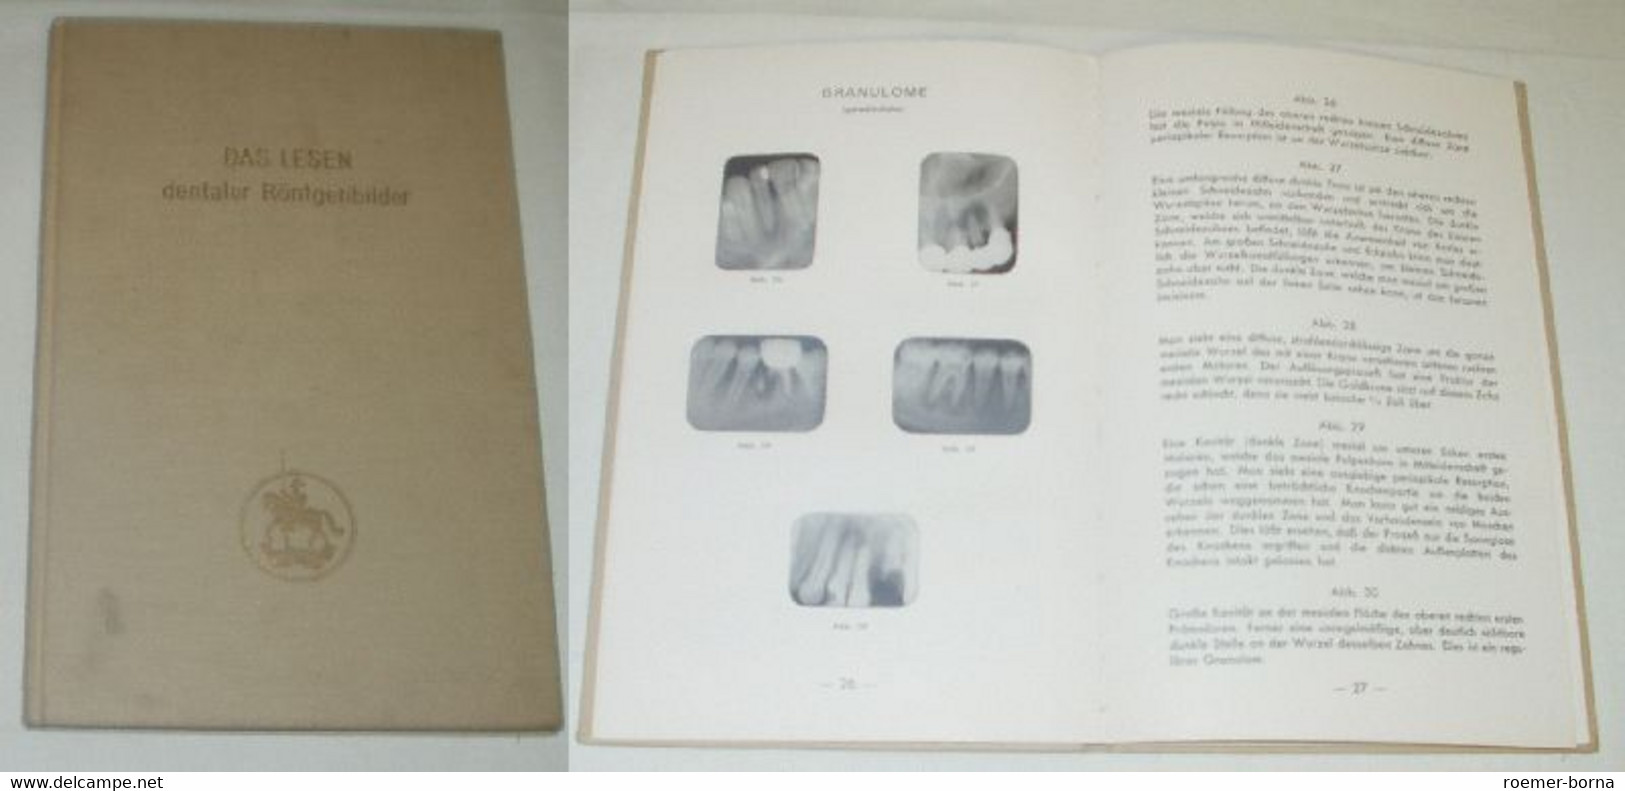 Das Lesen Dentaler Röntgenbilder - Santé & Médecine